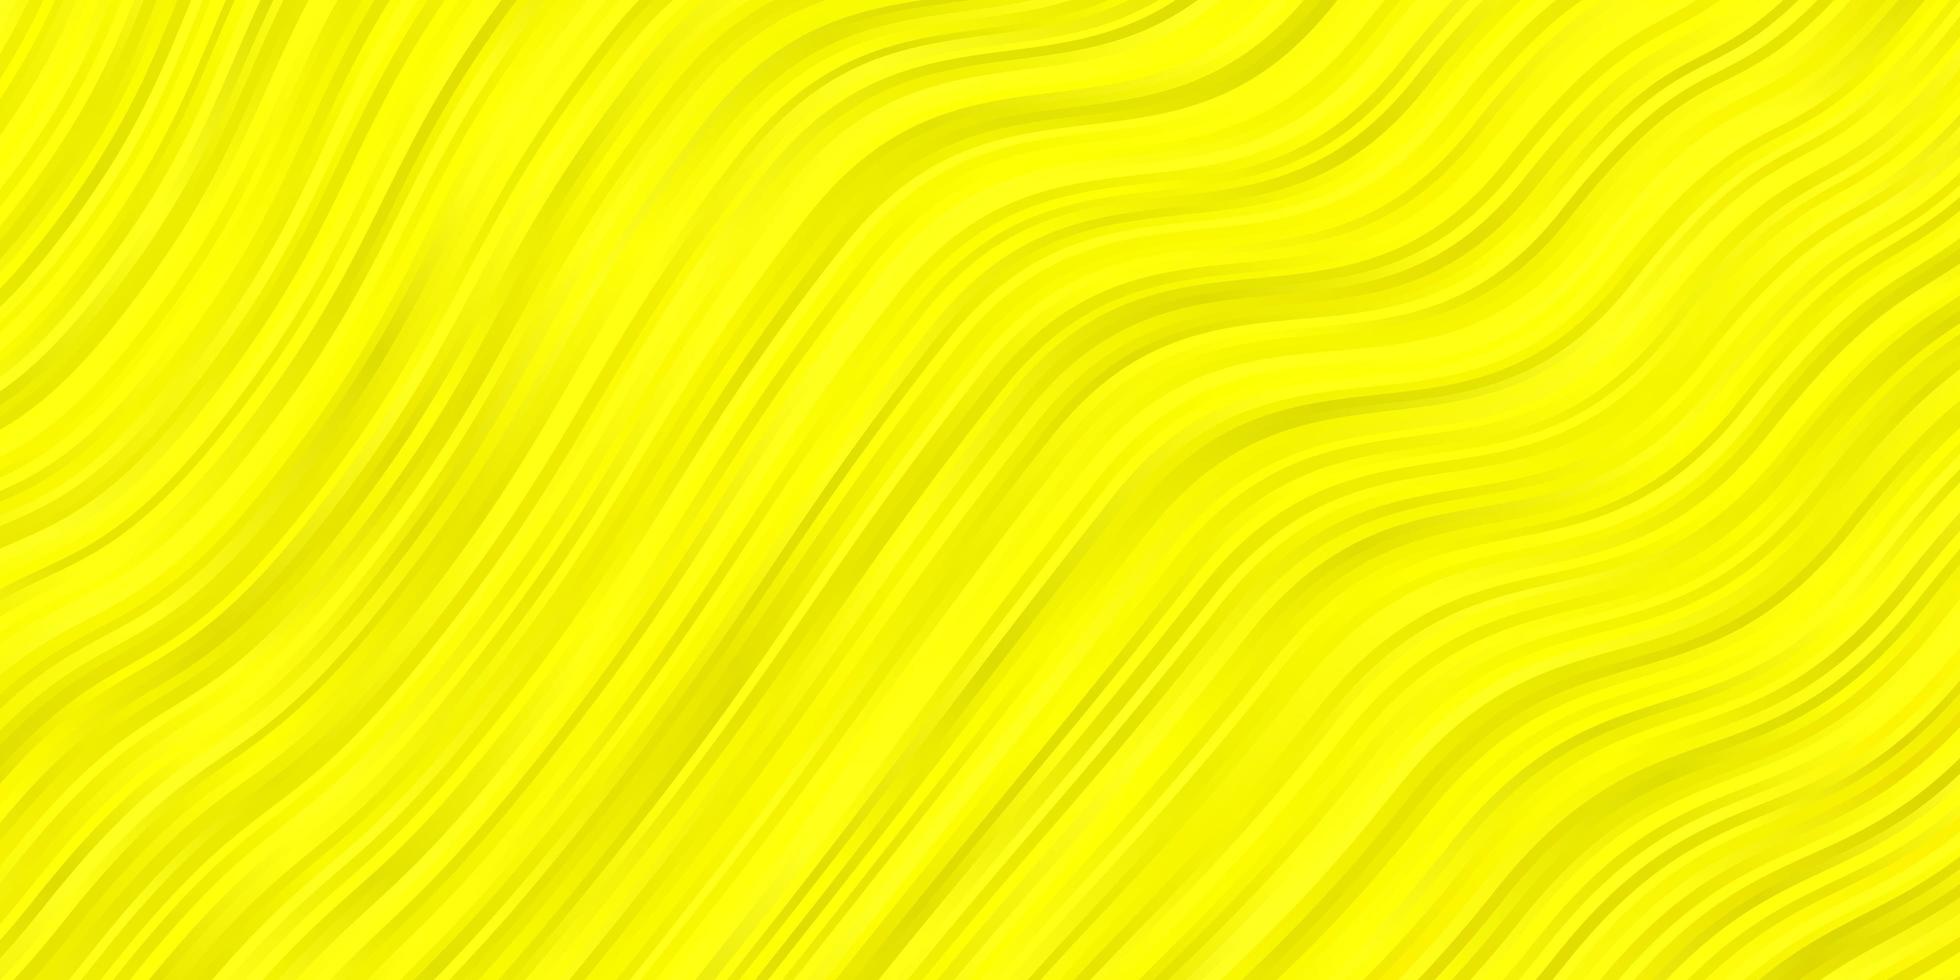 trama vettoriale giallo chiaro con arco circolare.